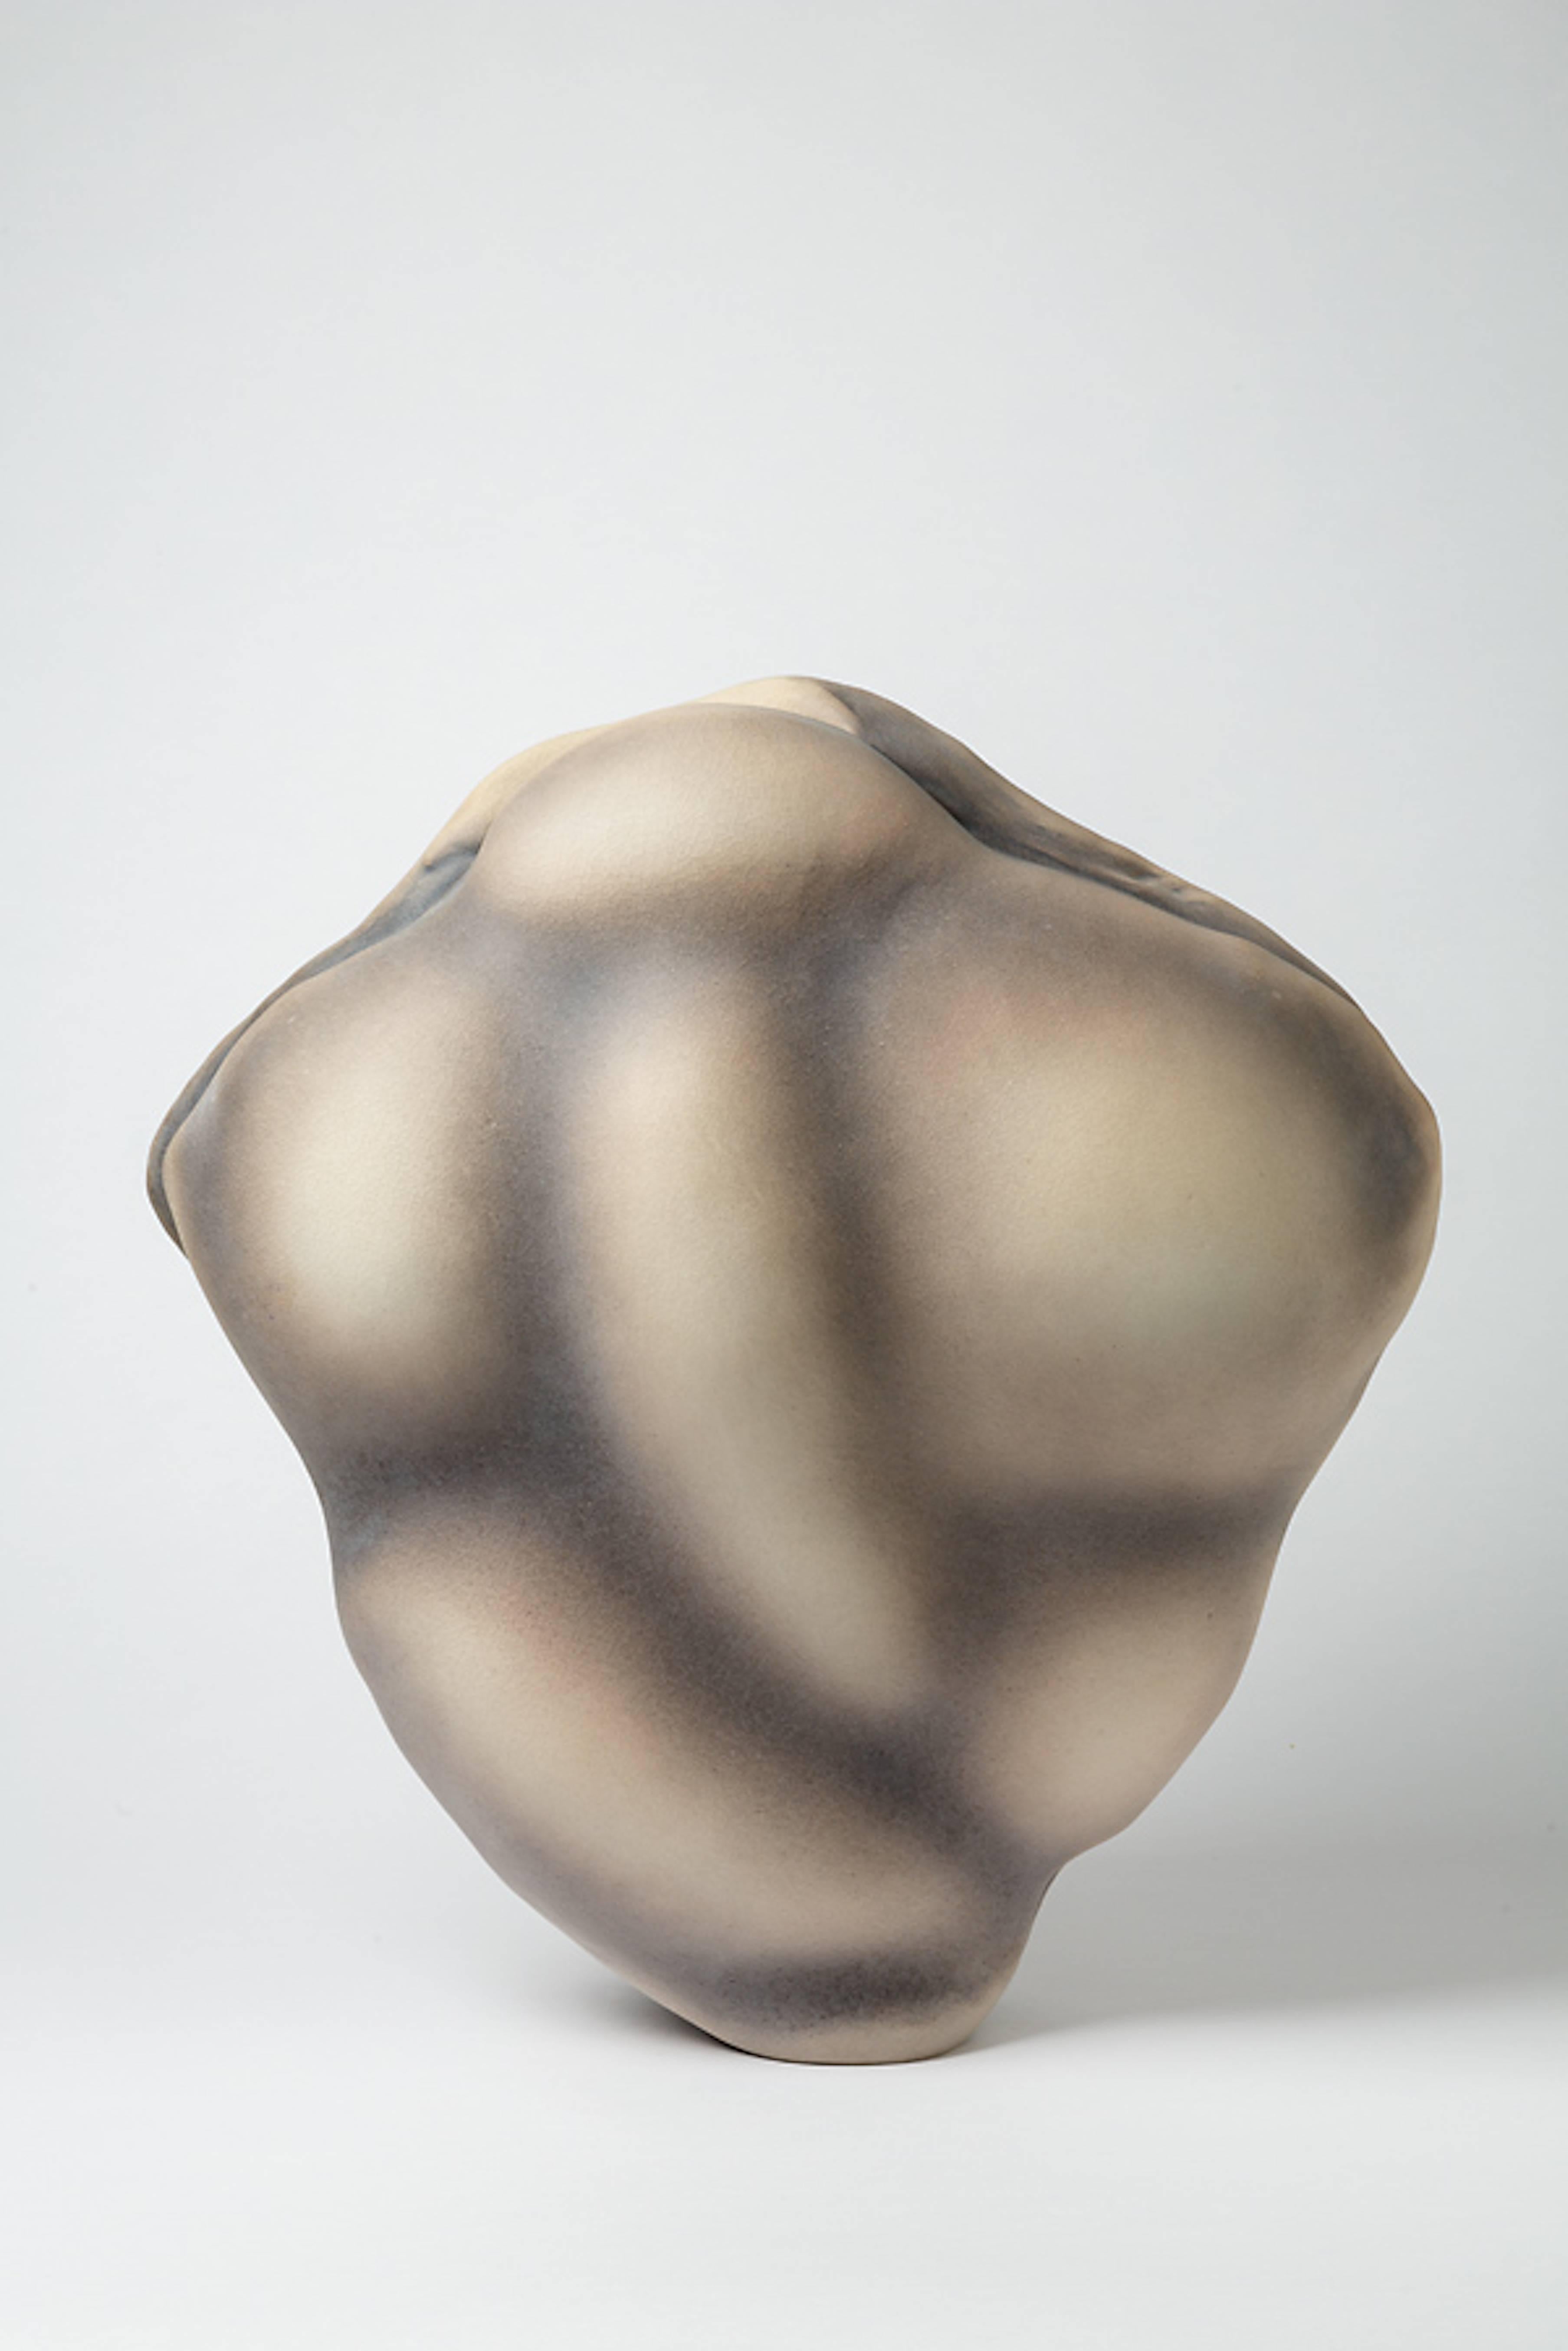 Molded Porcelain Sculpture by Wayne Fischer, circa 2016